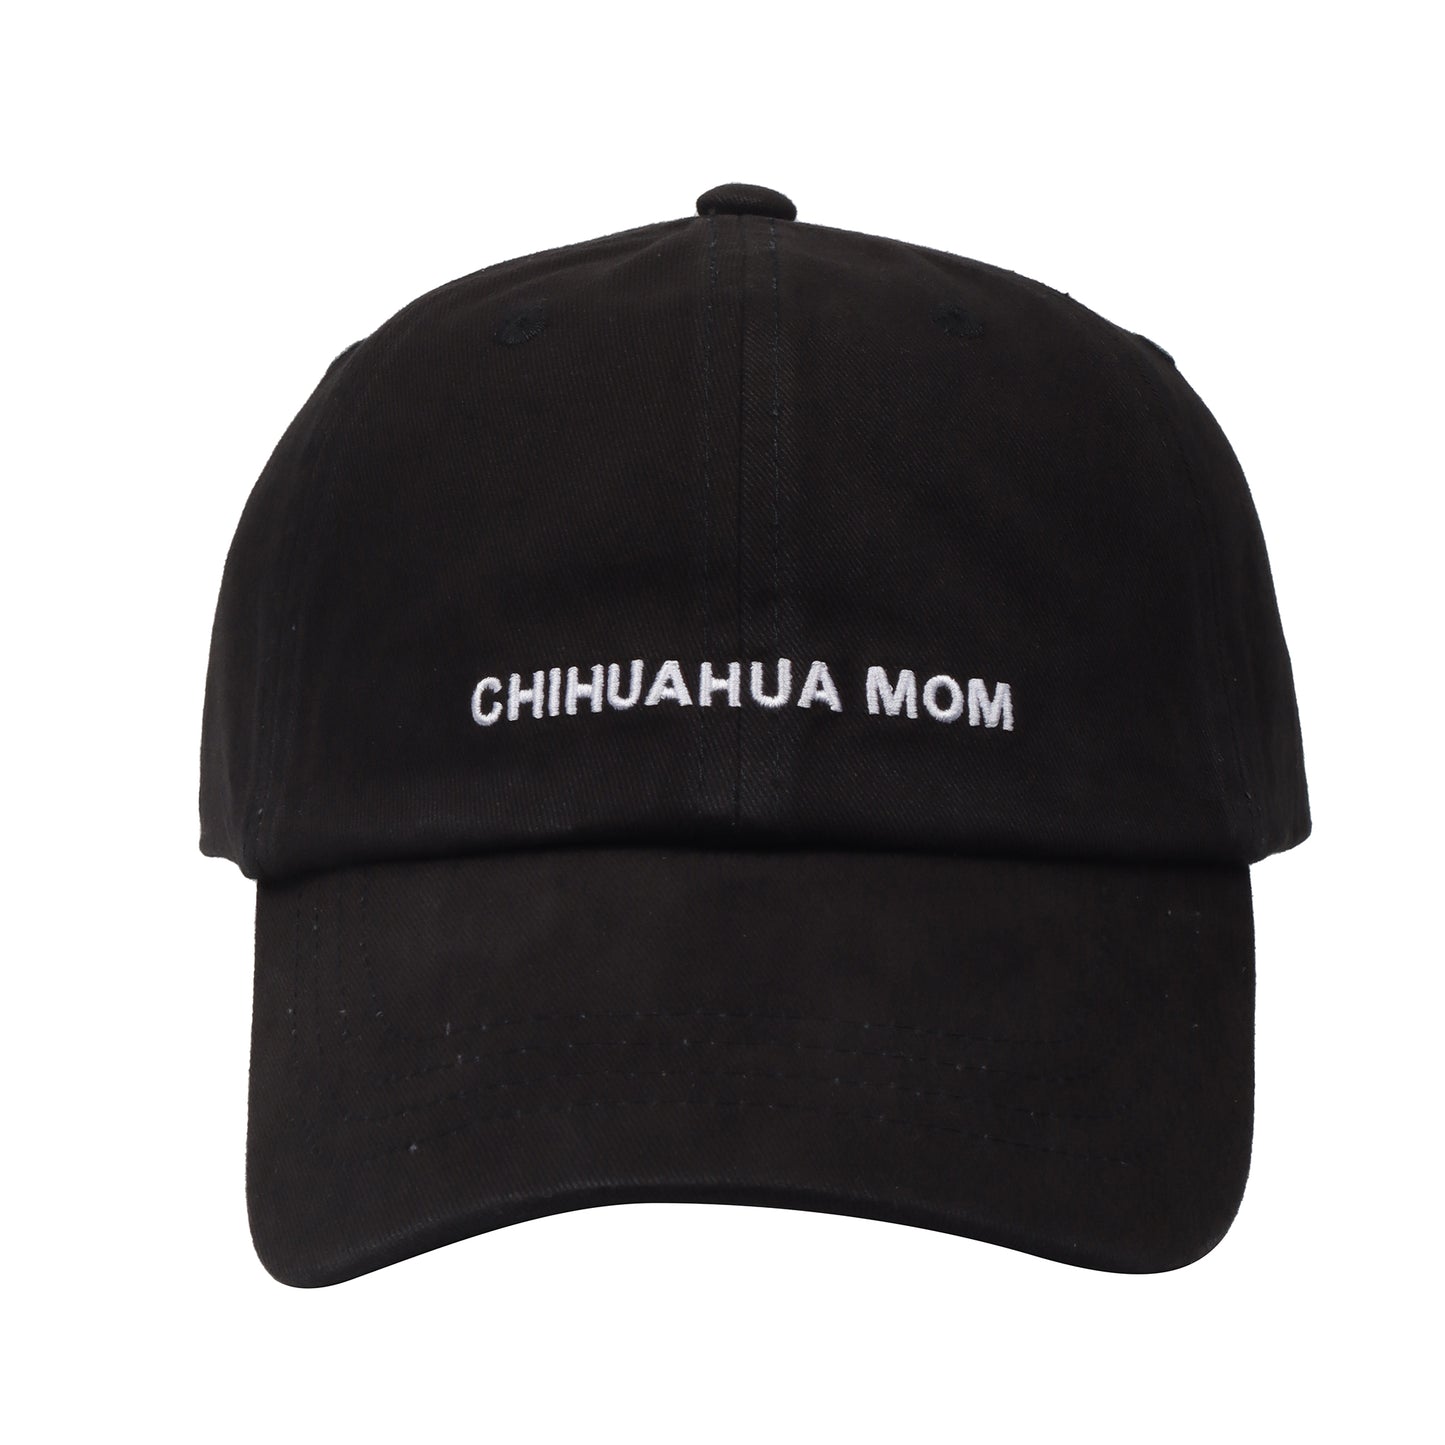 Chihuahua Mom Cap